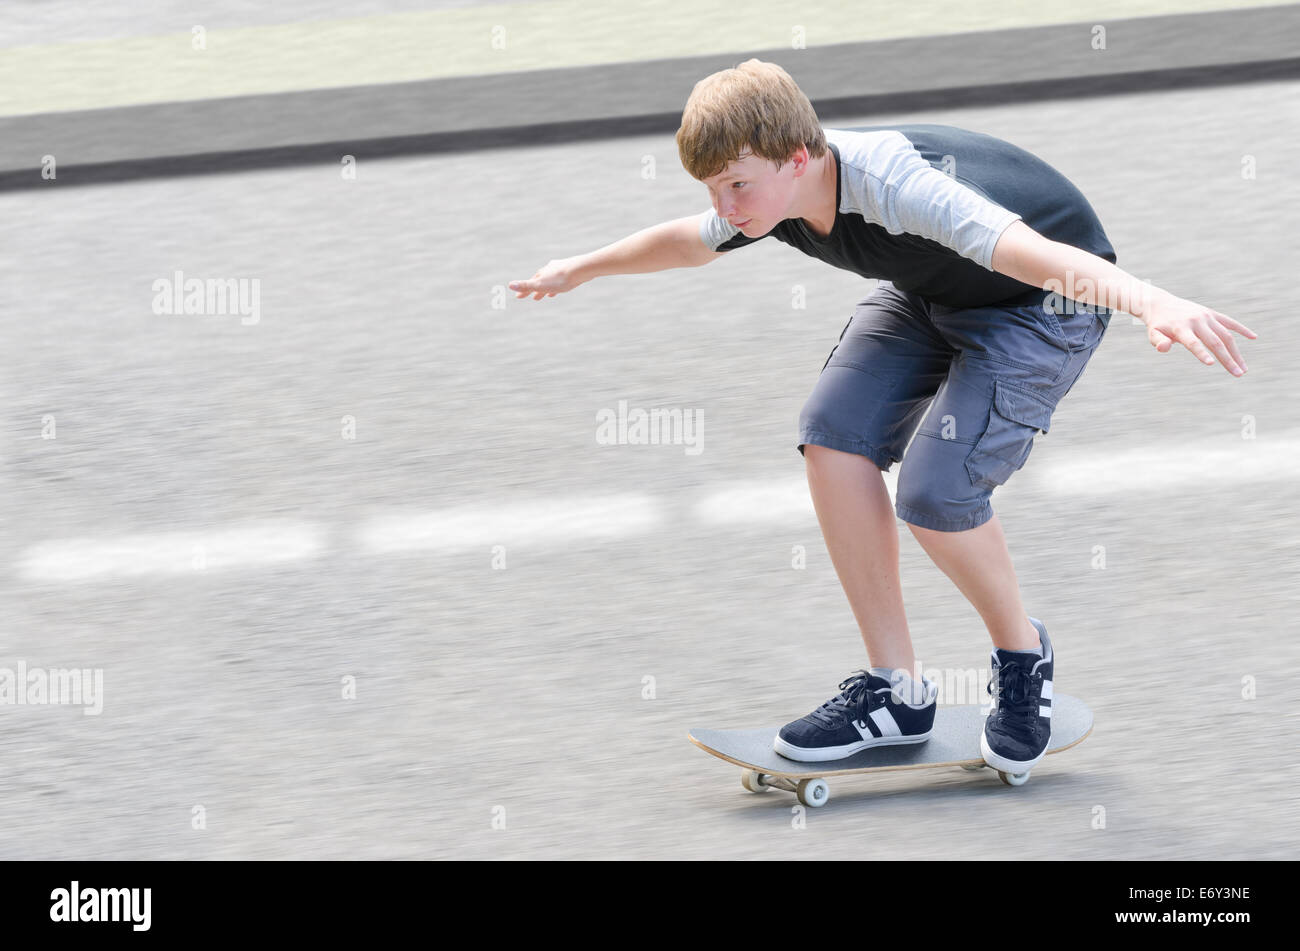 Joven patinador adolescente guy in motion moviendo en patineta a lo largo de calzada contra el asfalto borroso fondo con espacio de copia Foto de stock